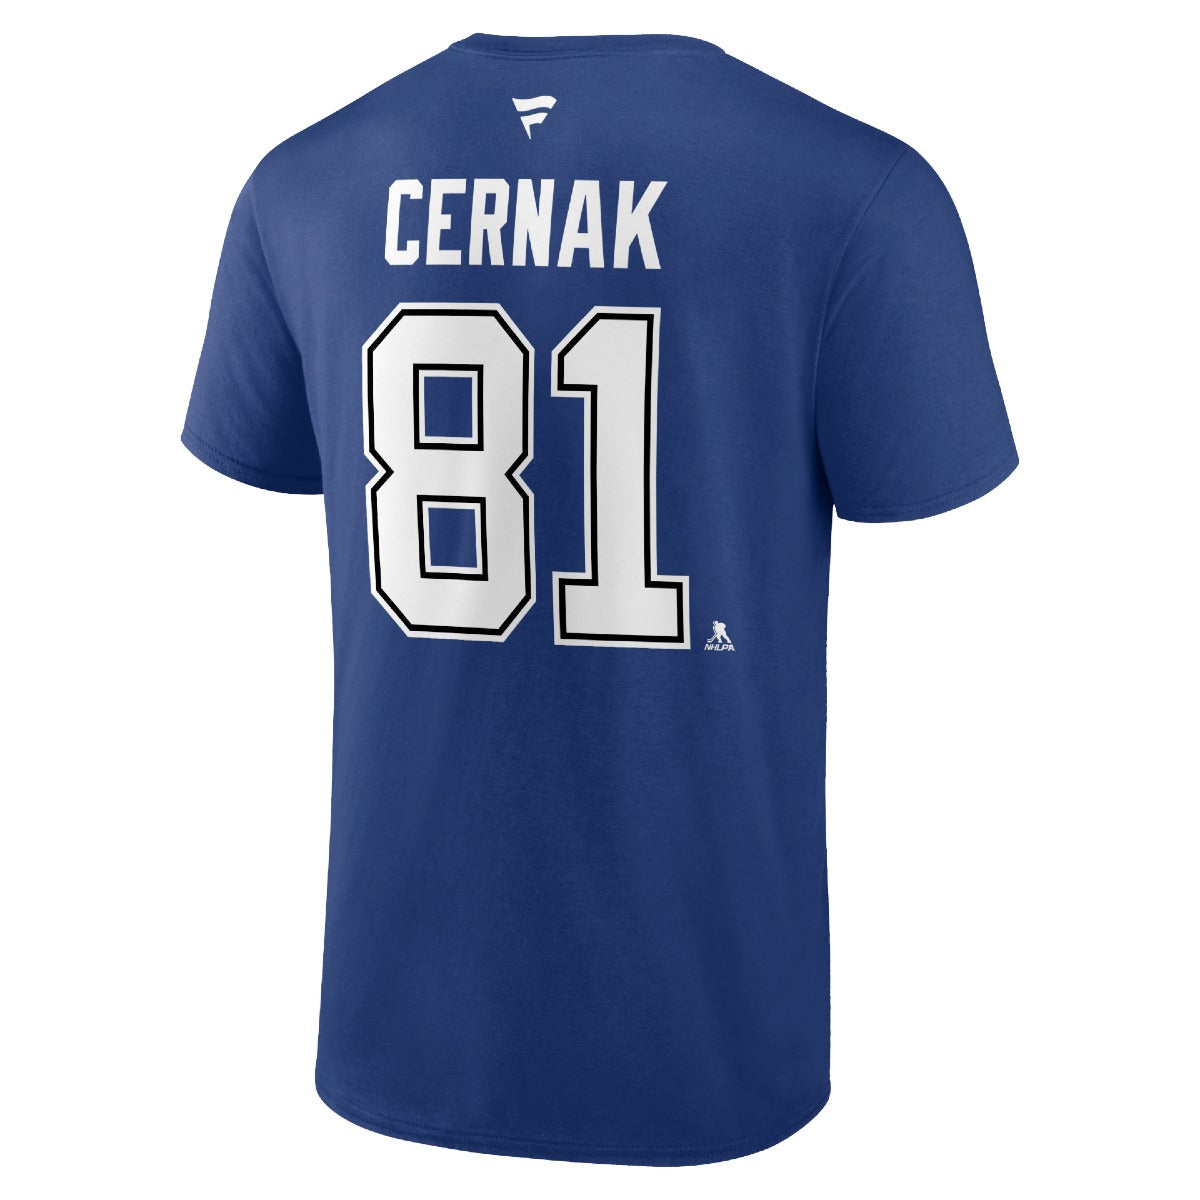 Tampa Bay Lightning Erik Cernak Name & Number Player Tee